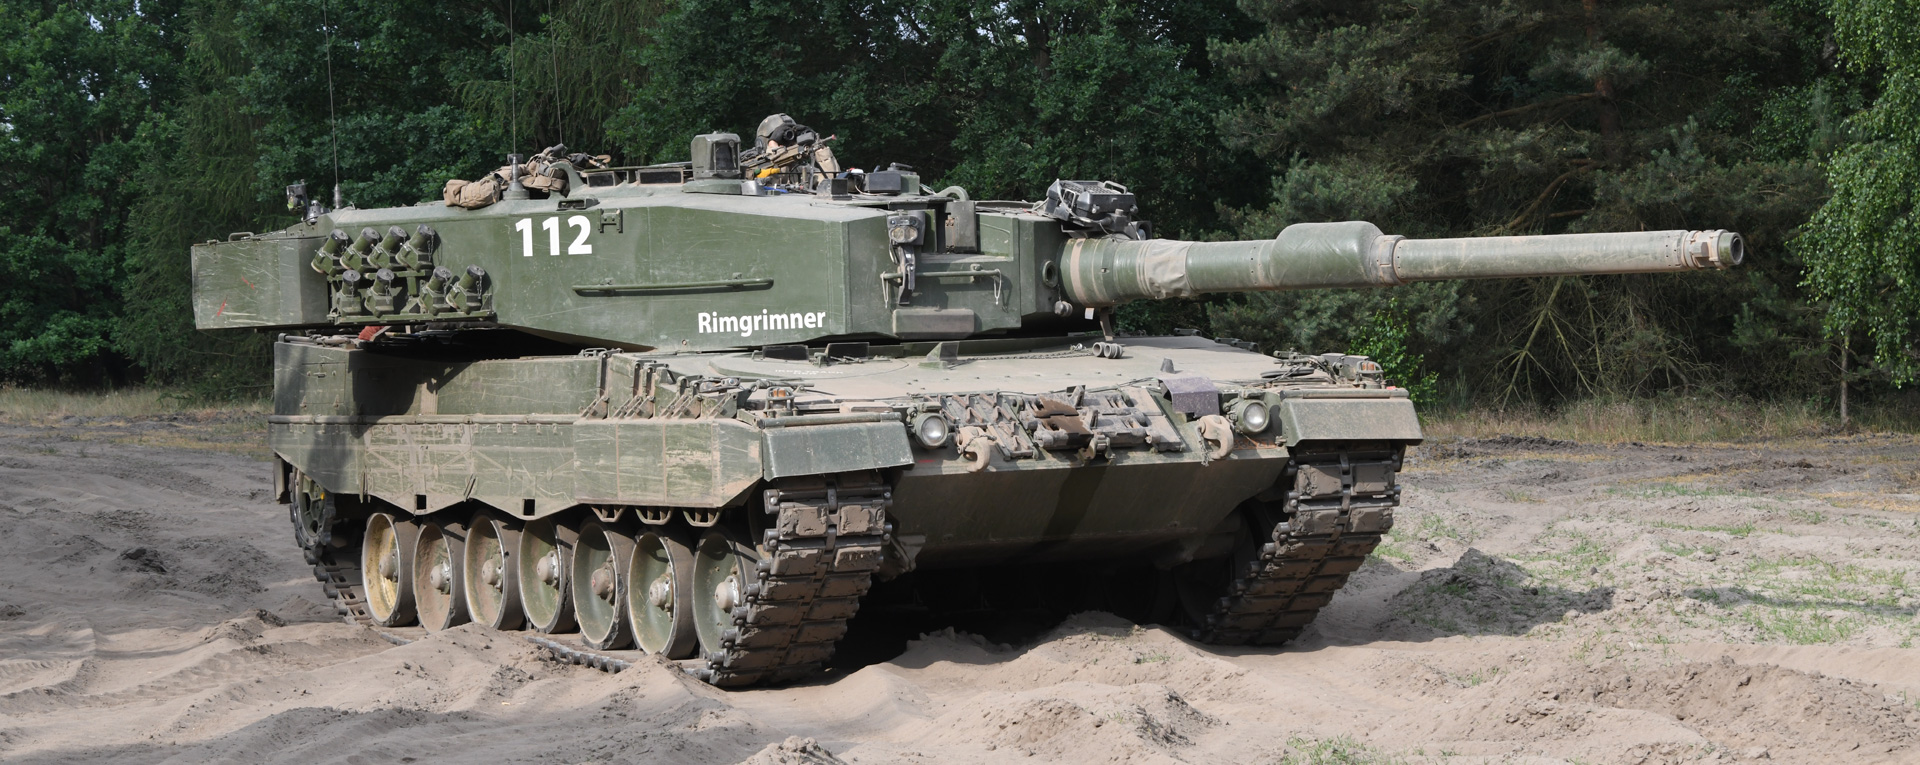 5 despropósitos escandalosos sobre los Leopard 2 que España enviará a Ucrania